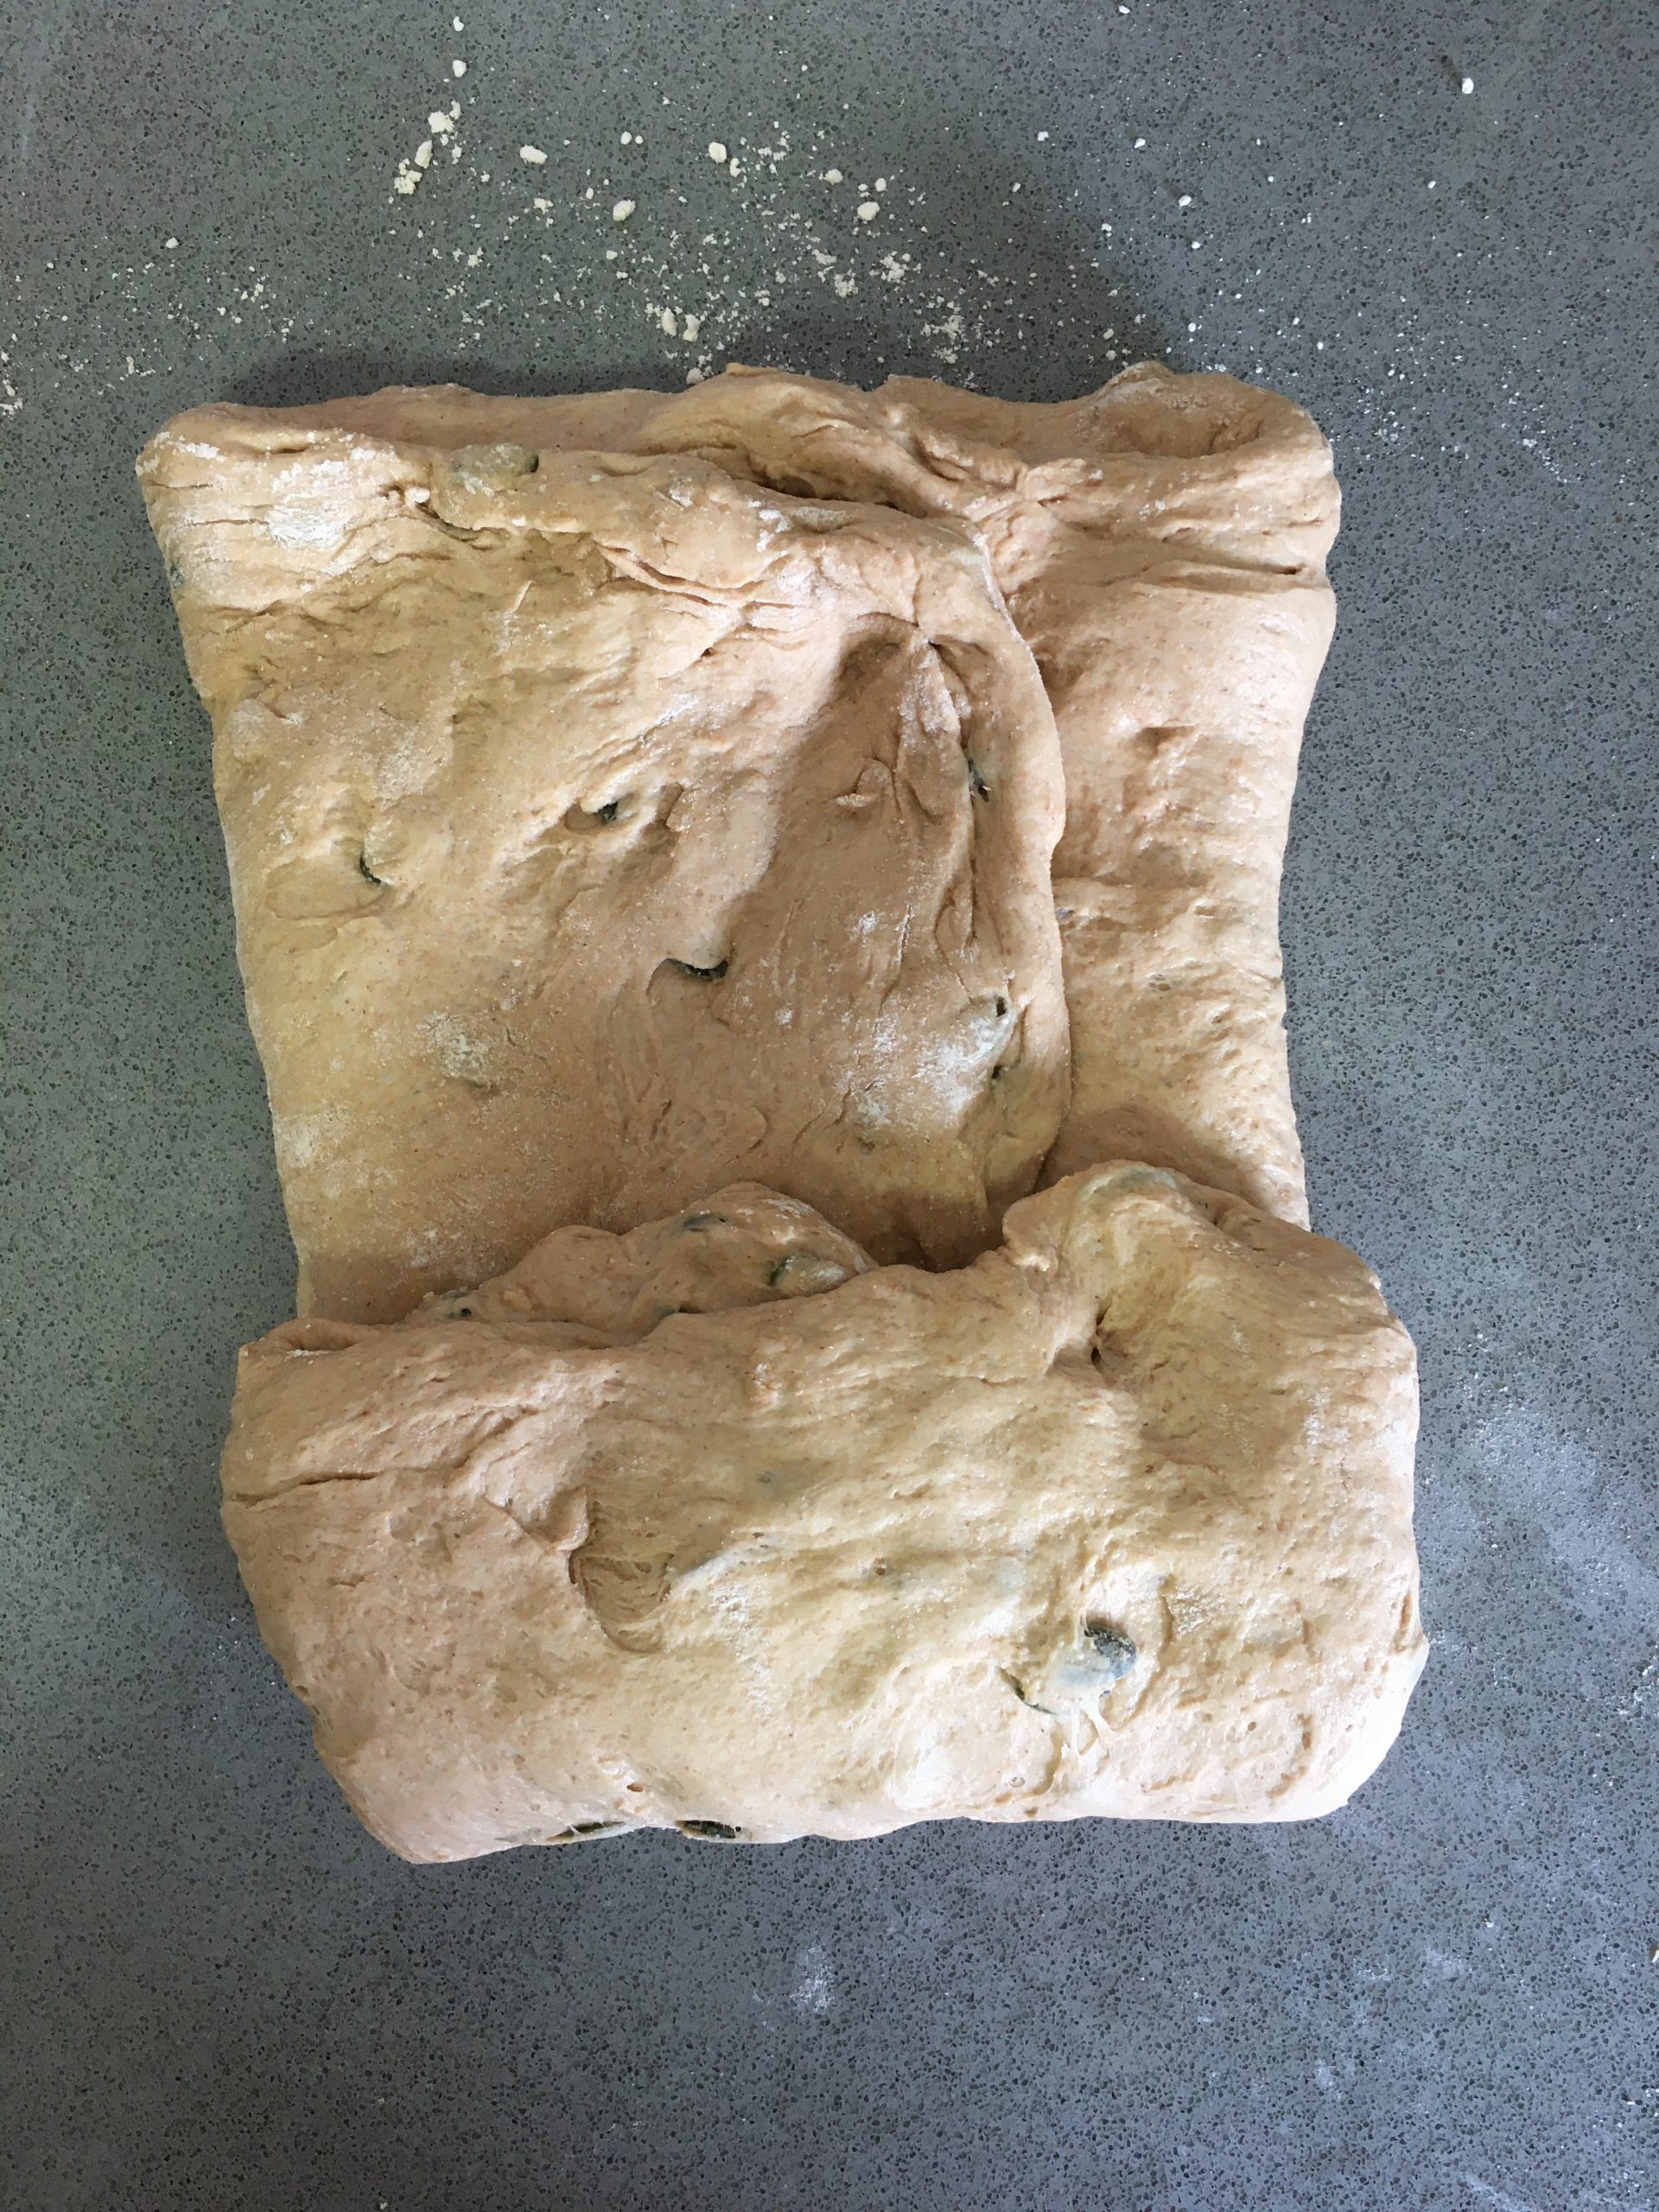 לחם מקמח כוסמין מלא עם גרעינים | צילום: ספיר דהן